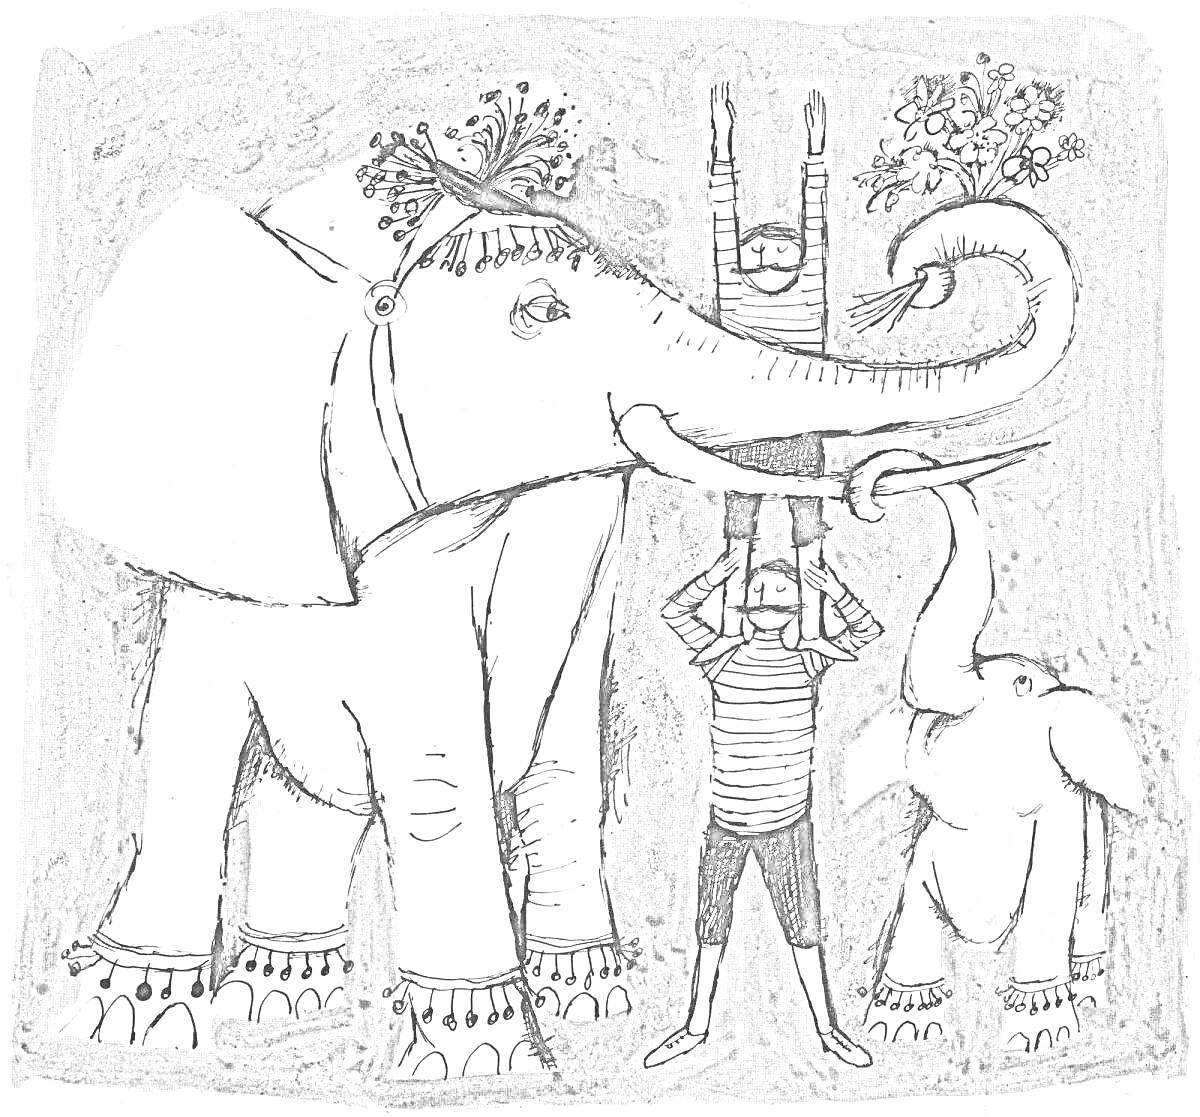 Раскраска Большой слон с цветочным венком на голове, маленький слон, два акробата в шапочках и полосатых одеждах, один держит цветочный венок ногами, второй поднимает третьего, который стоит на руках в поднятых руках второго.